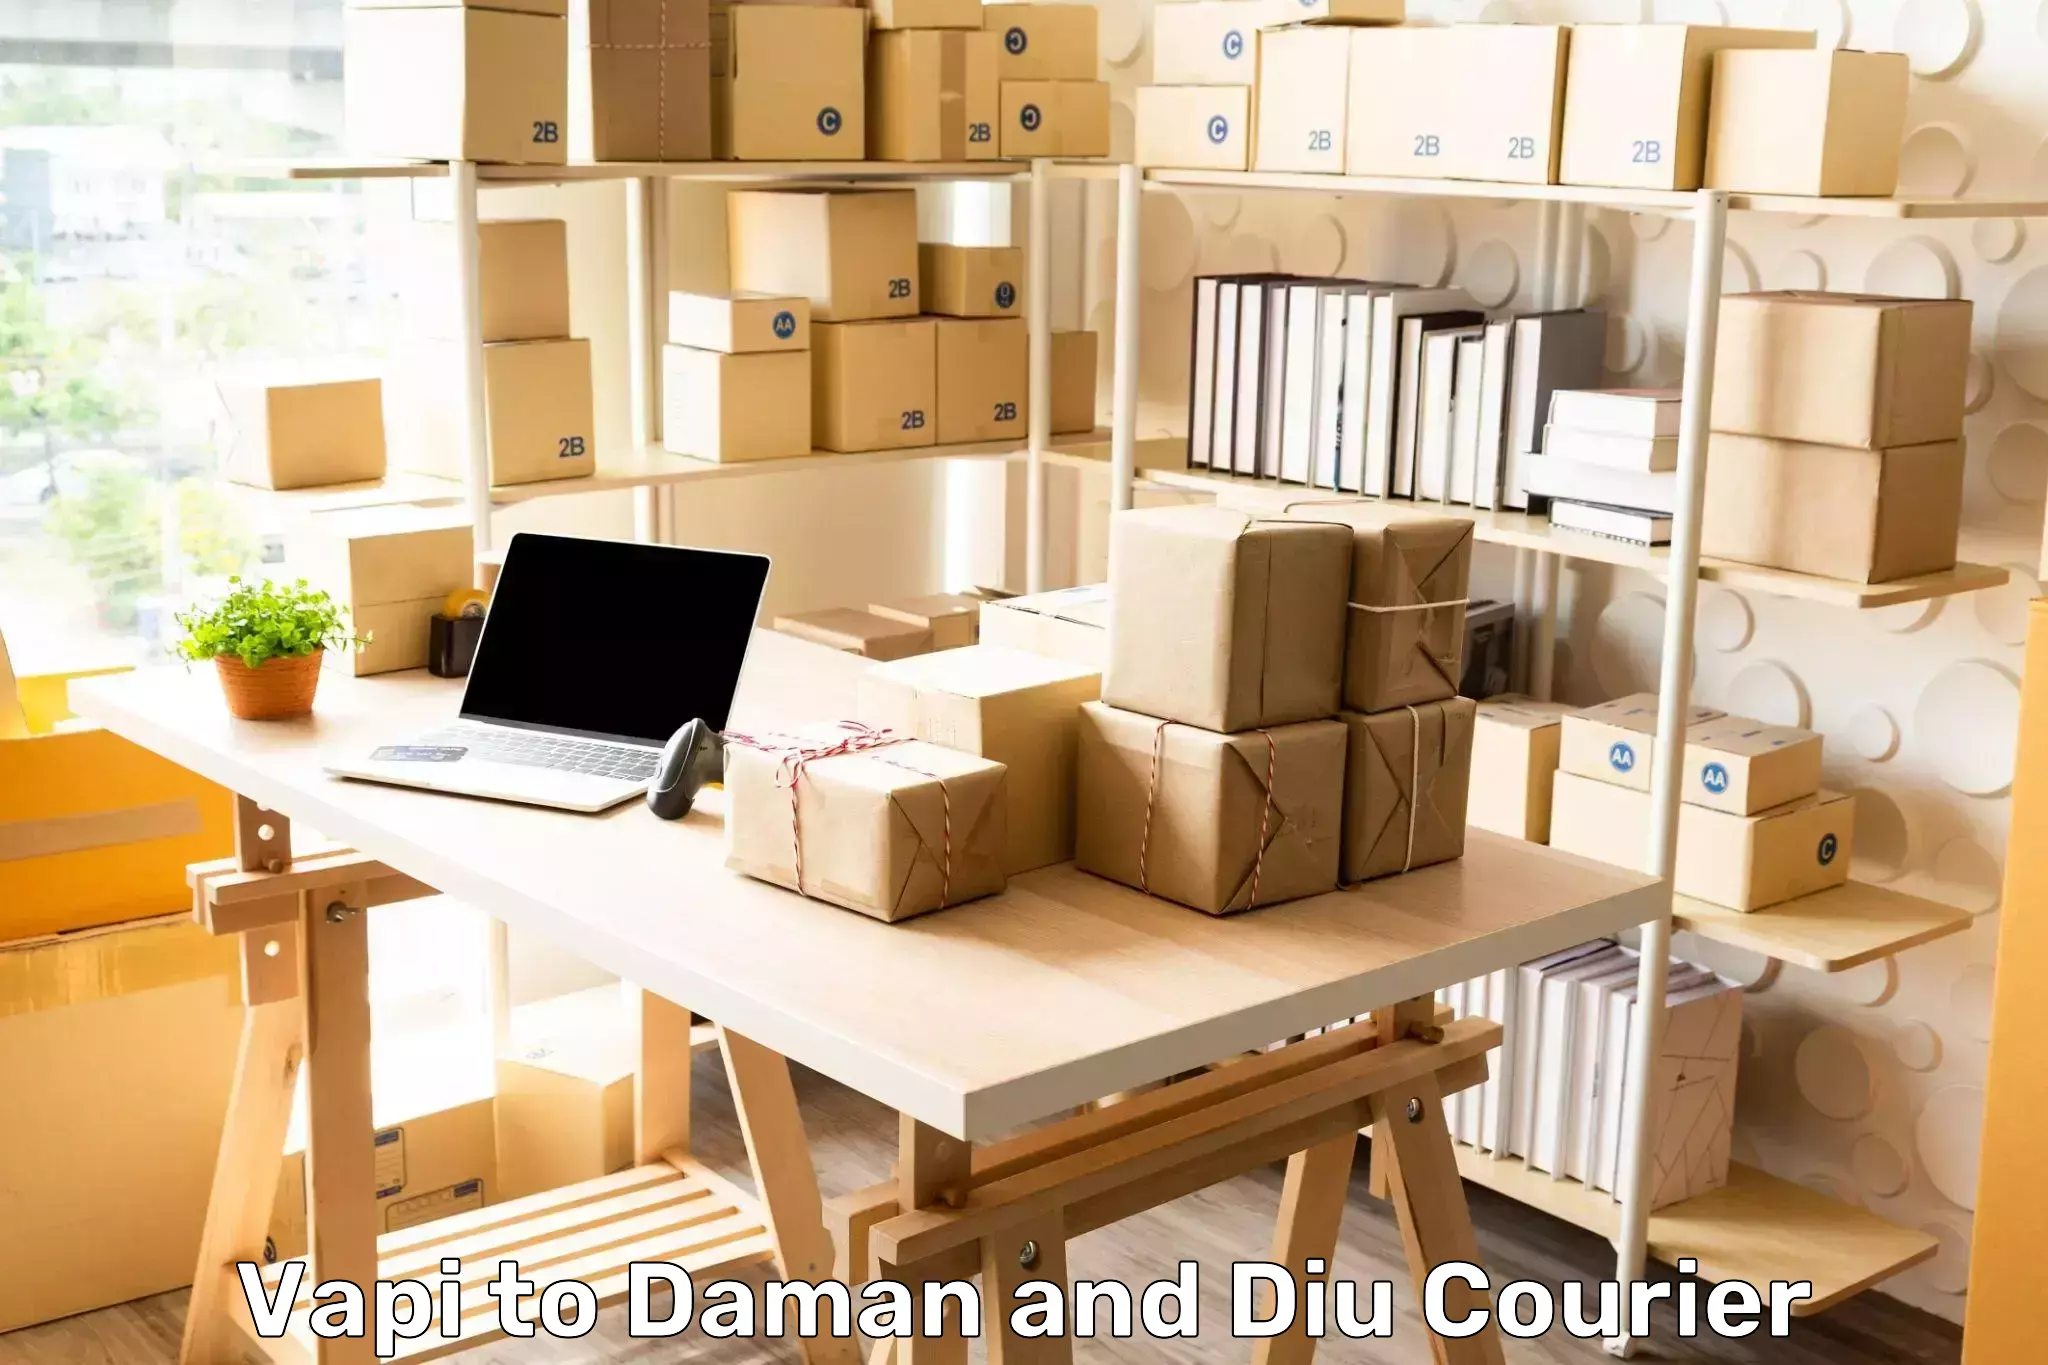 High-capacity parcel service Vapi to Daman and Diu